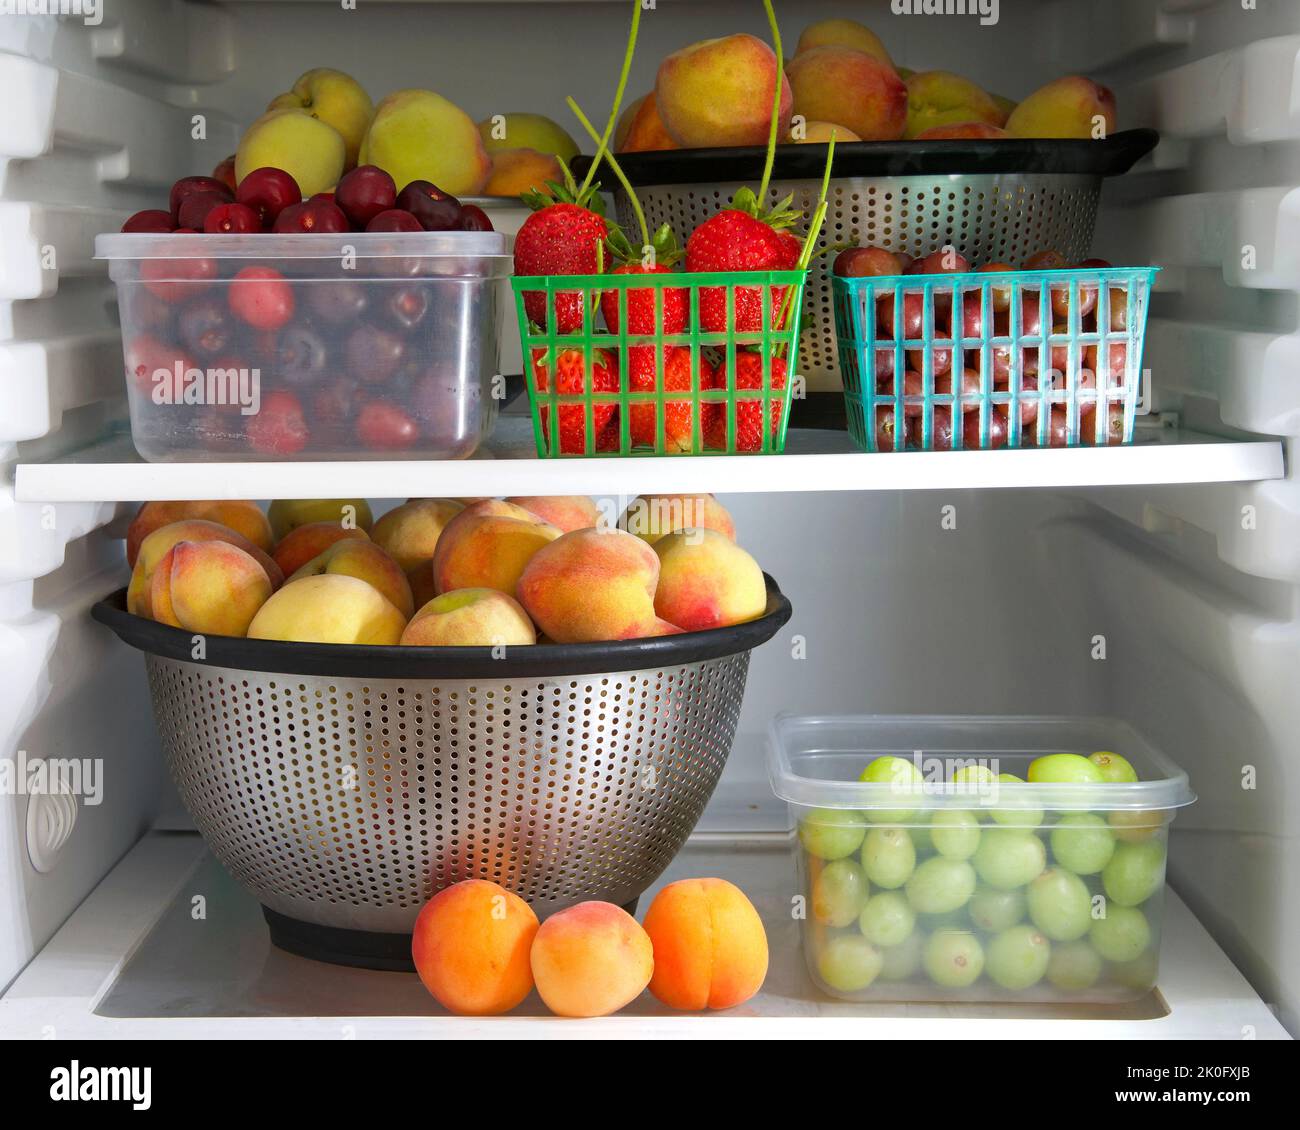 Frigorifero domestico con contenitori di frutta fresca da giardino, pesche, uva, ciliegie, fragole e nettarine. Spuntini salutari. Foto Stock